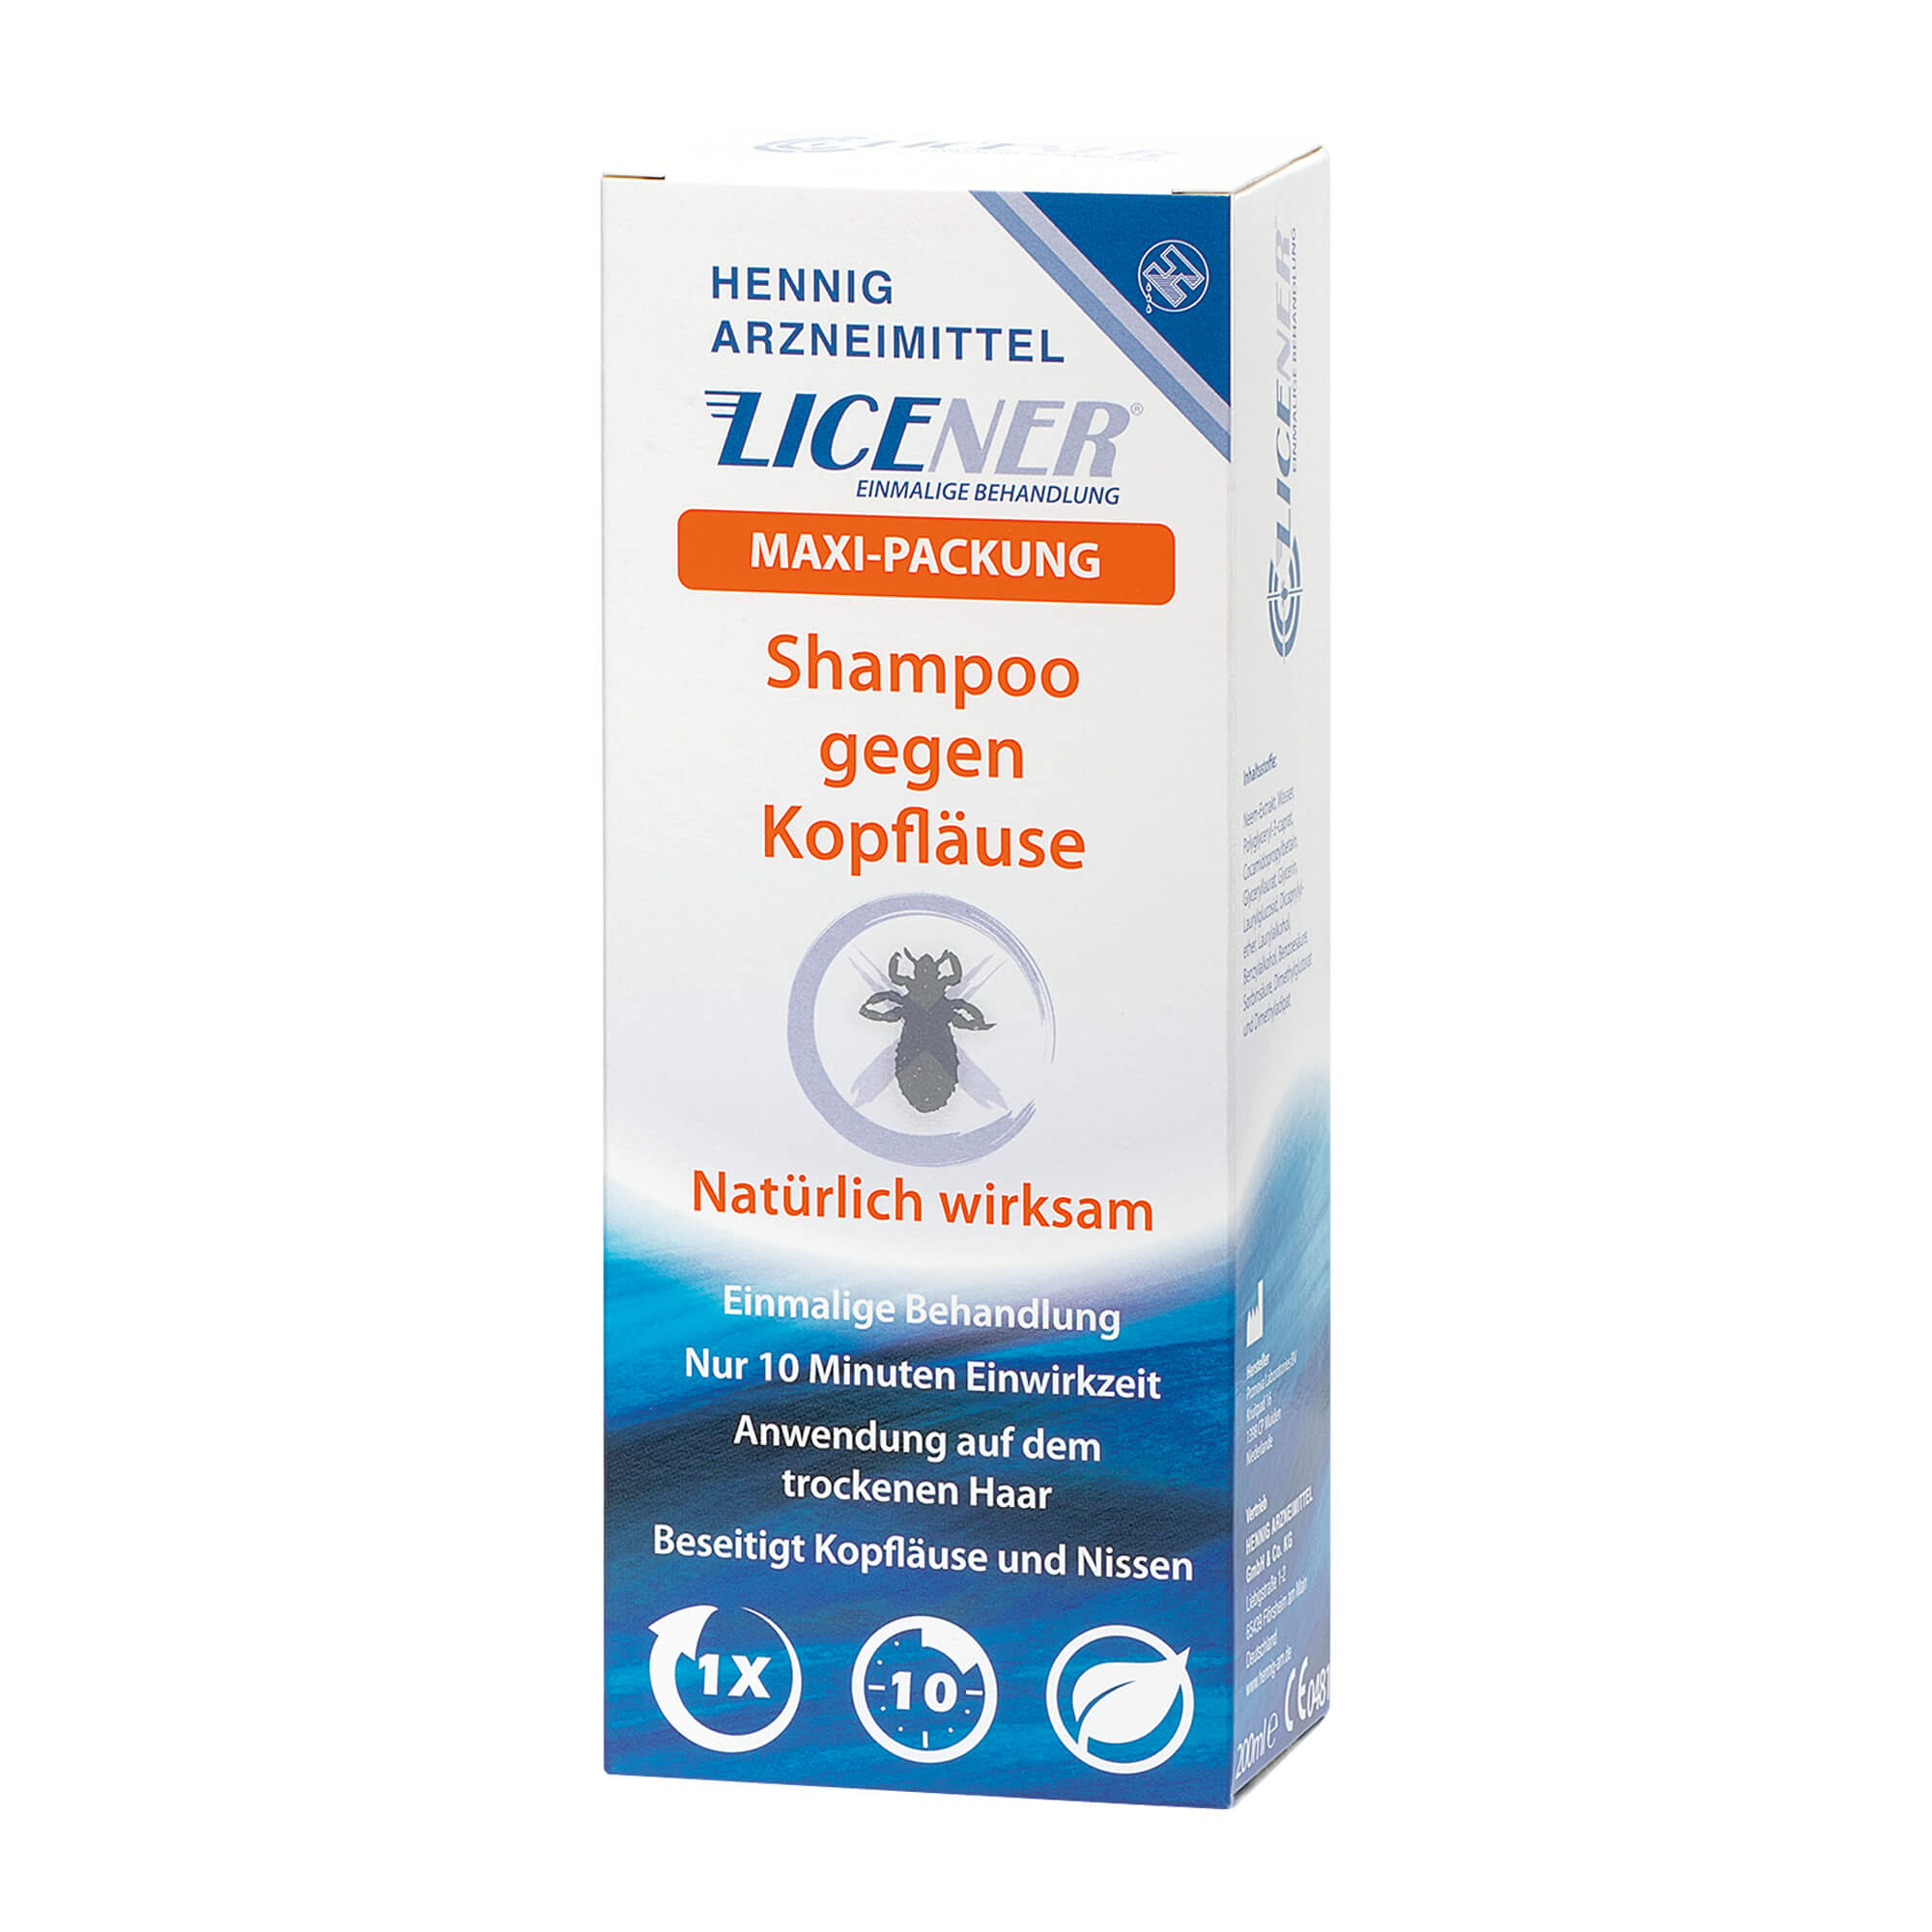 Shampoo gegen Kopfläuse tötet Läuse und Läuseeier (Nissen).